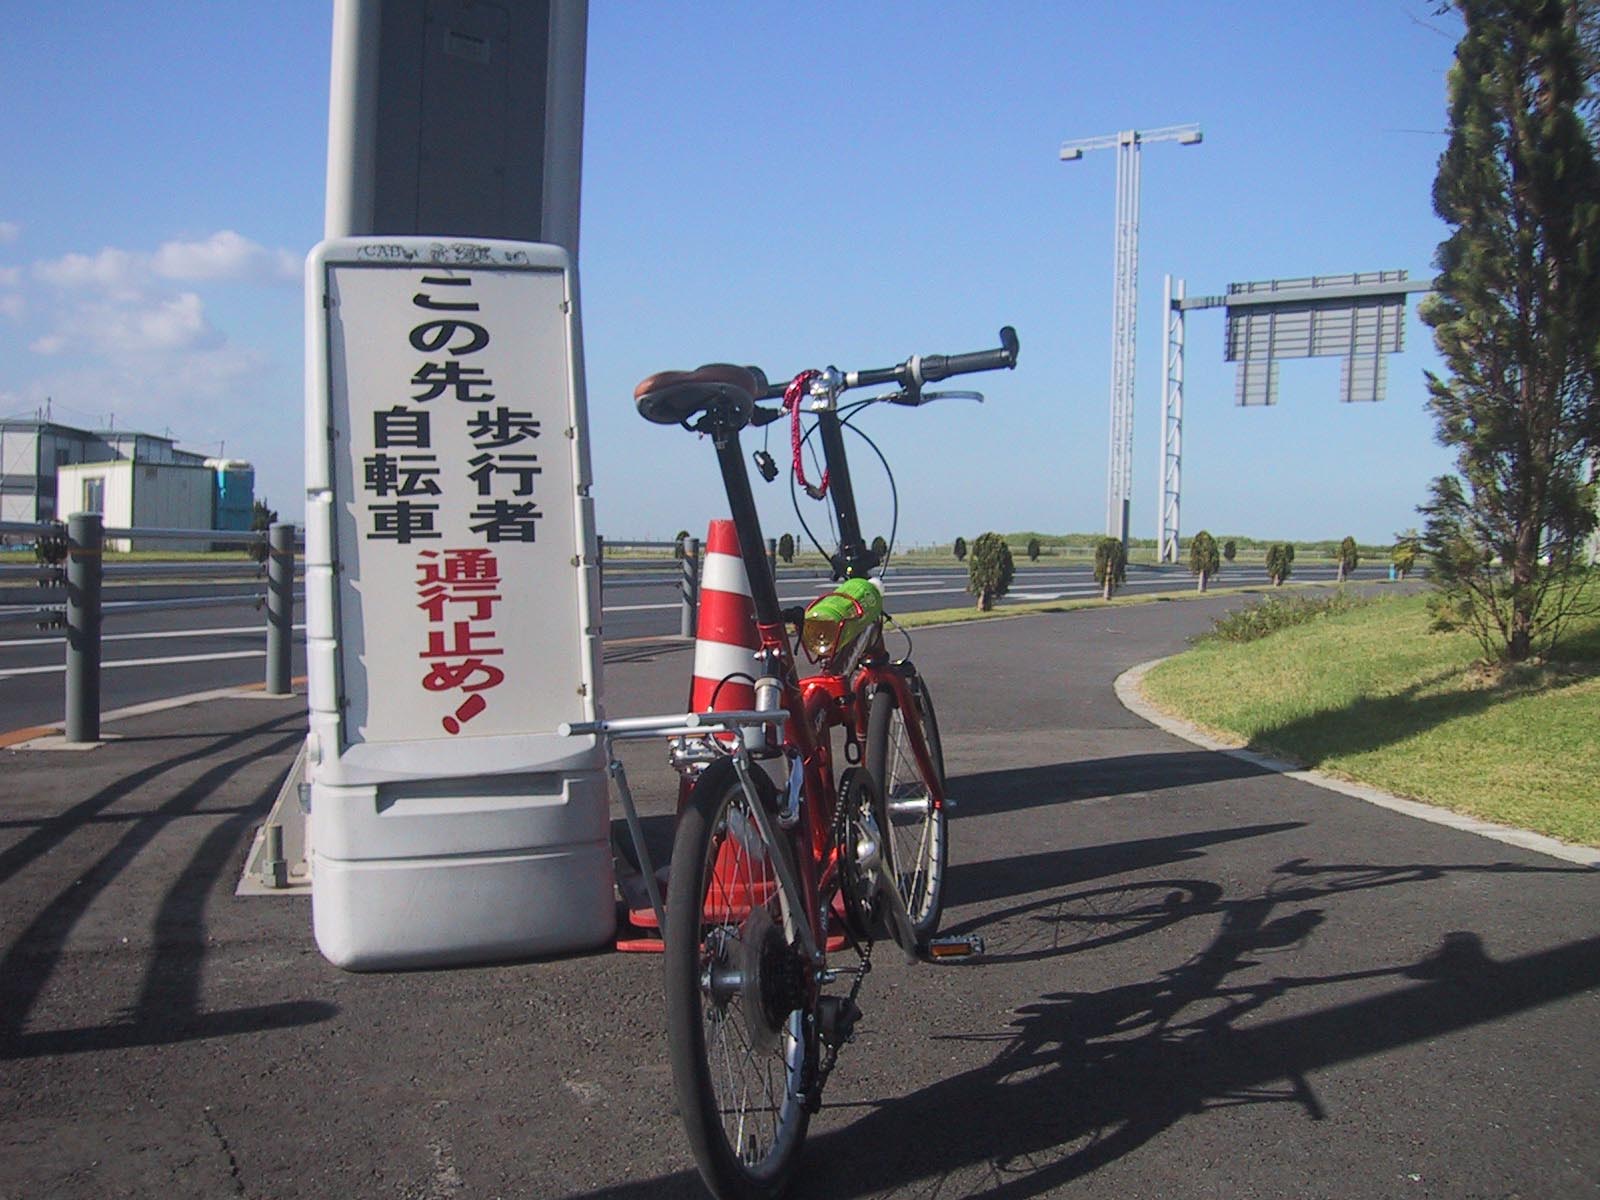 羽田空港の旅客ターミナルに自転車で出入りする方法（こげこげチャリ坊【輪行メモ】）_e0022344_171622.jpg